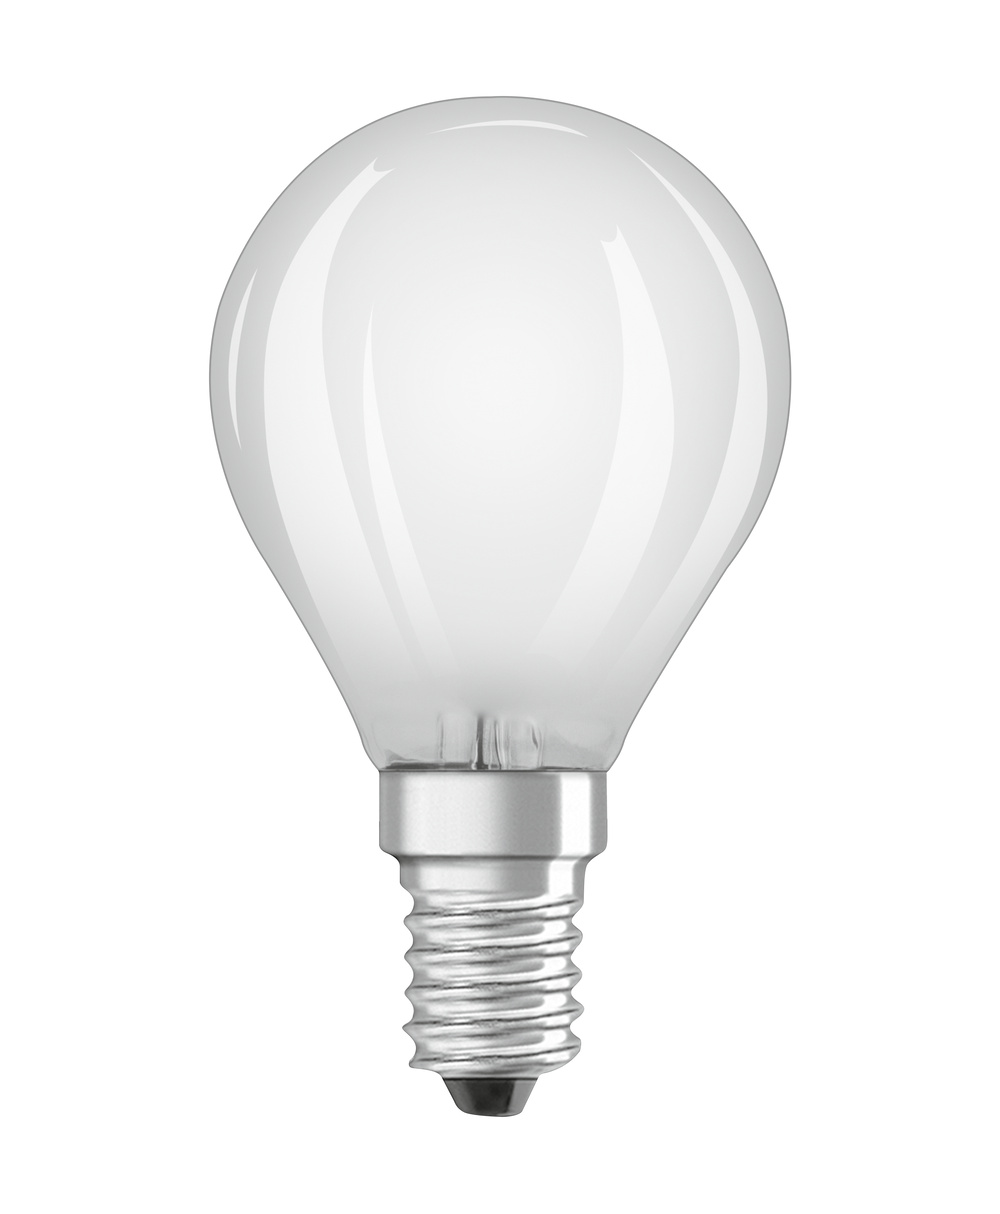 Ledvance LED lamp PARATHOM CLASSIC P 25  2.5 W/2700 K E14  - 4099854069239